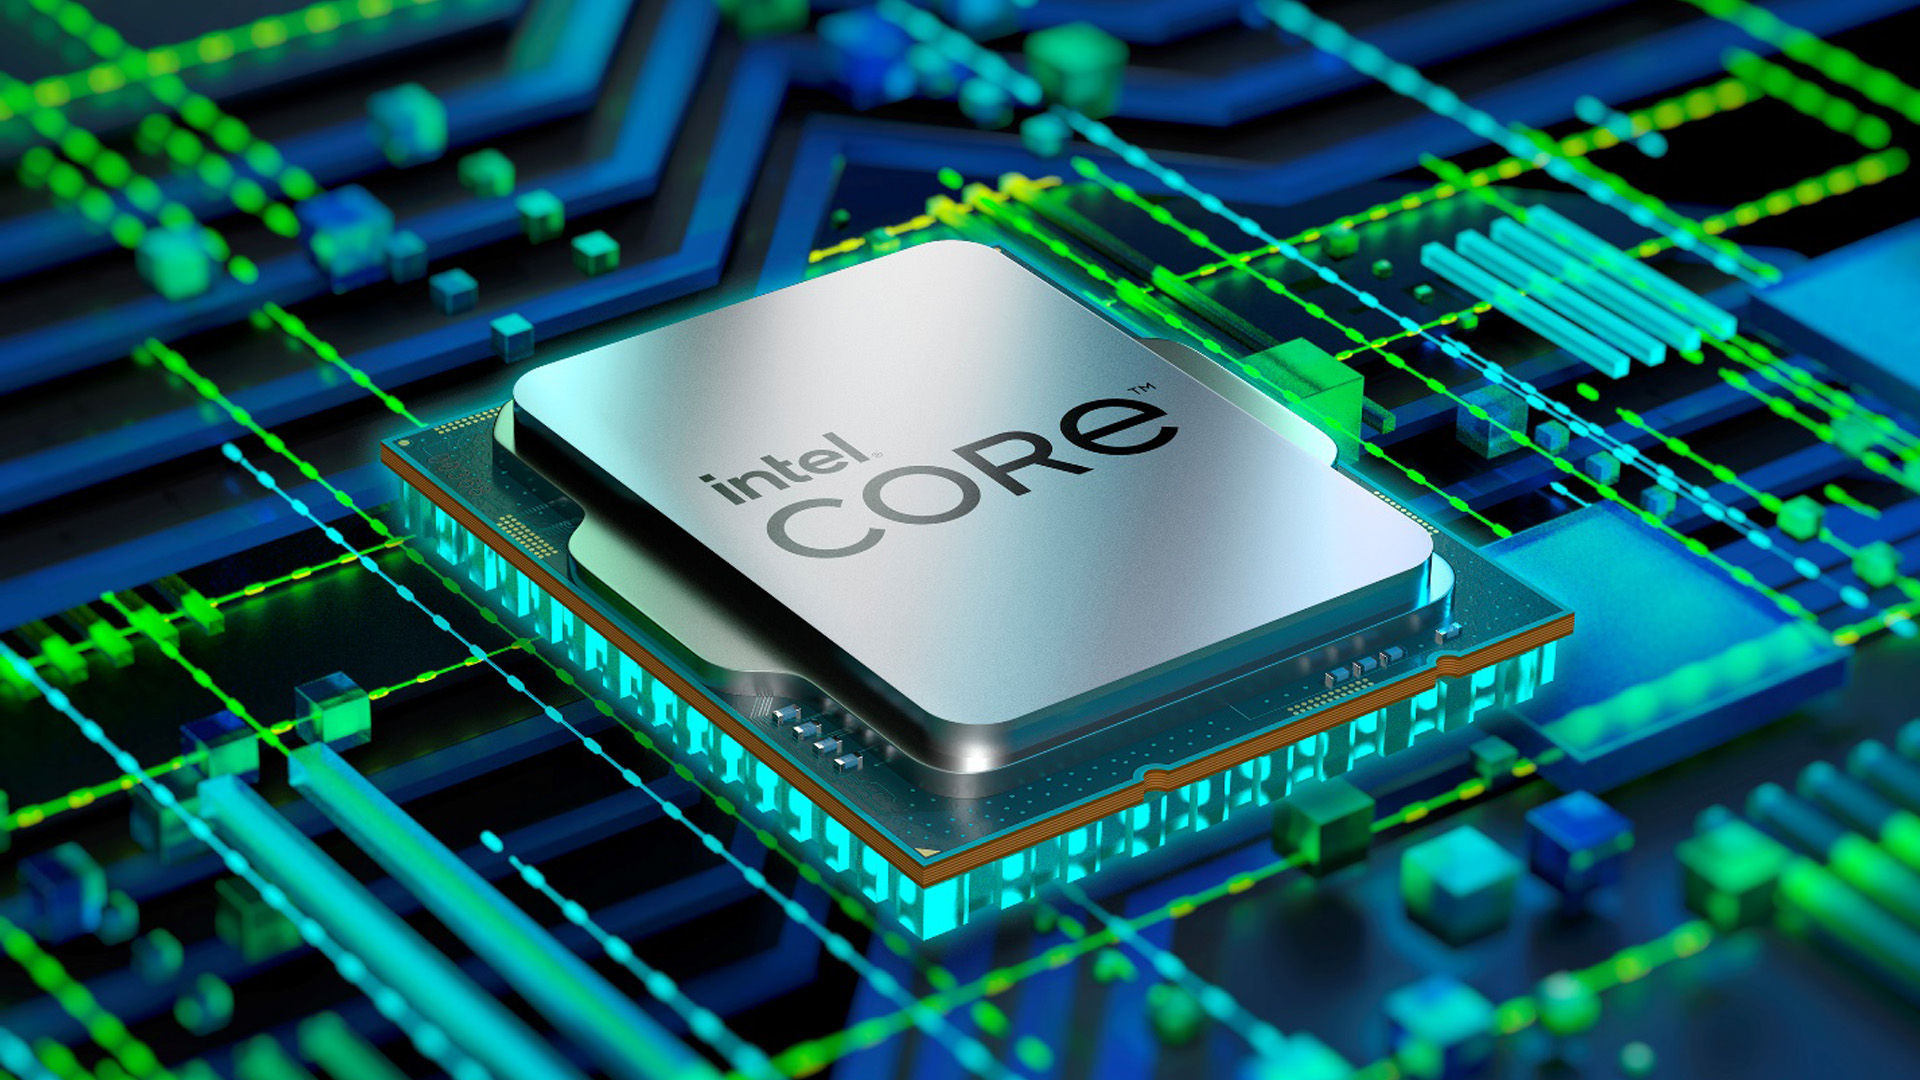 เปิดตัวโปรเซสเซอร์ Intel Core HX เจน 12 ในฐานะ แพลตฟอร์ม โมบายล์ เวิร์กสเตชัน